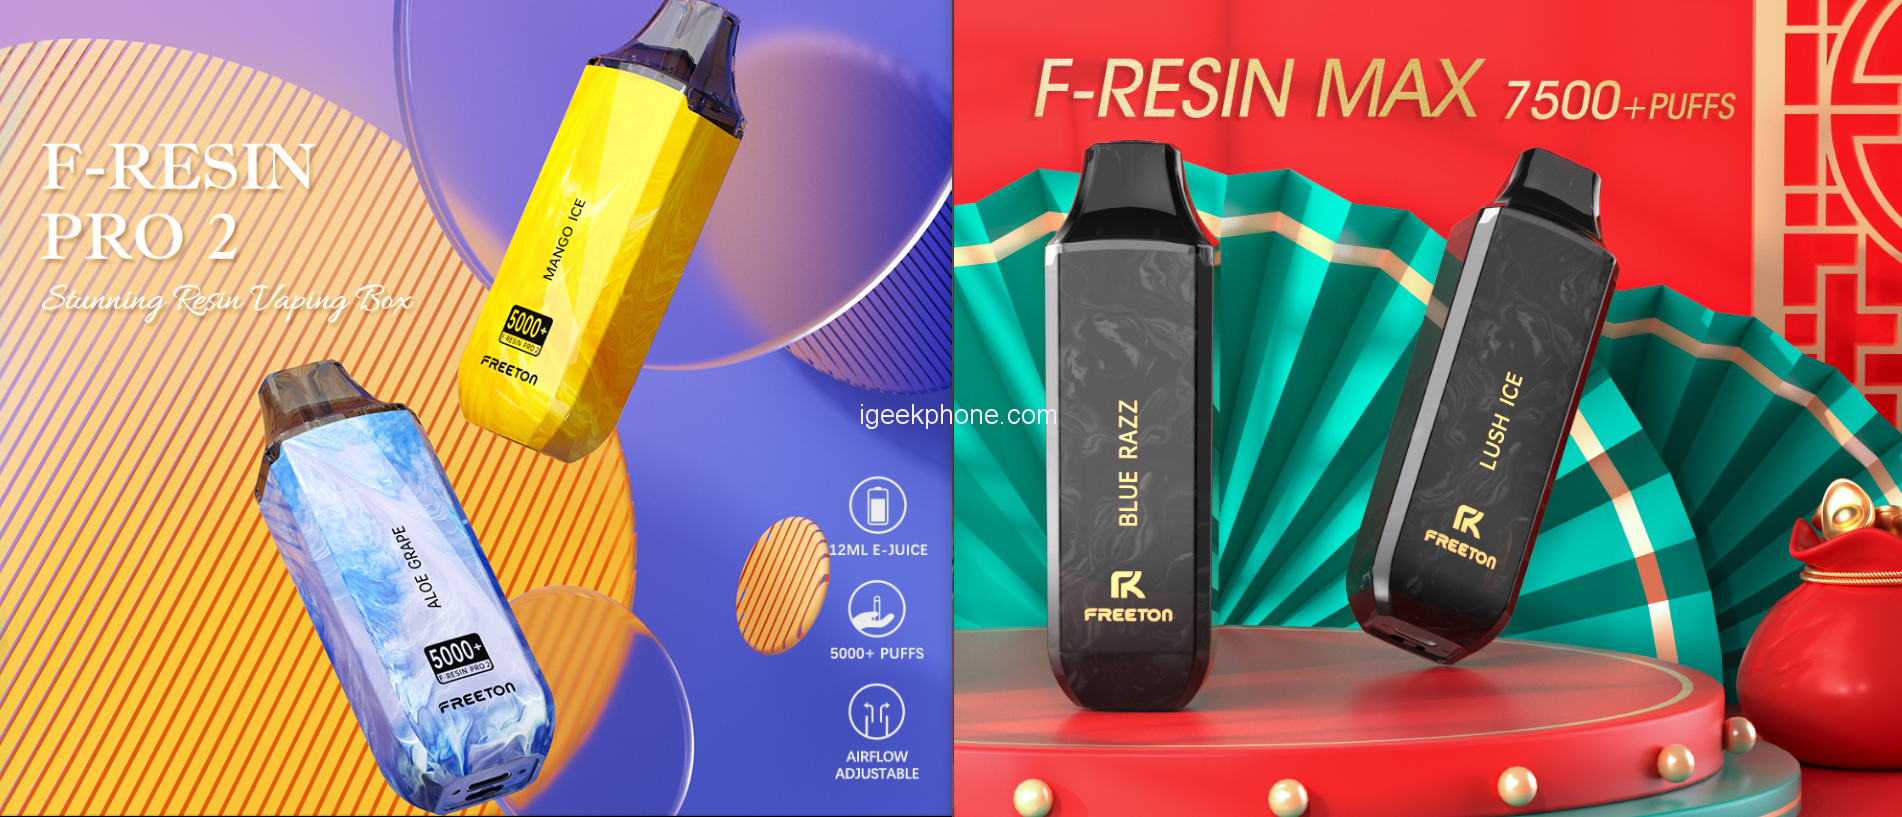 F-RESIN PRO 2  Freeton-Premium Disposable E-cigarette Brand